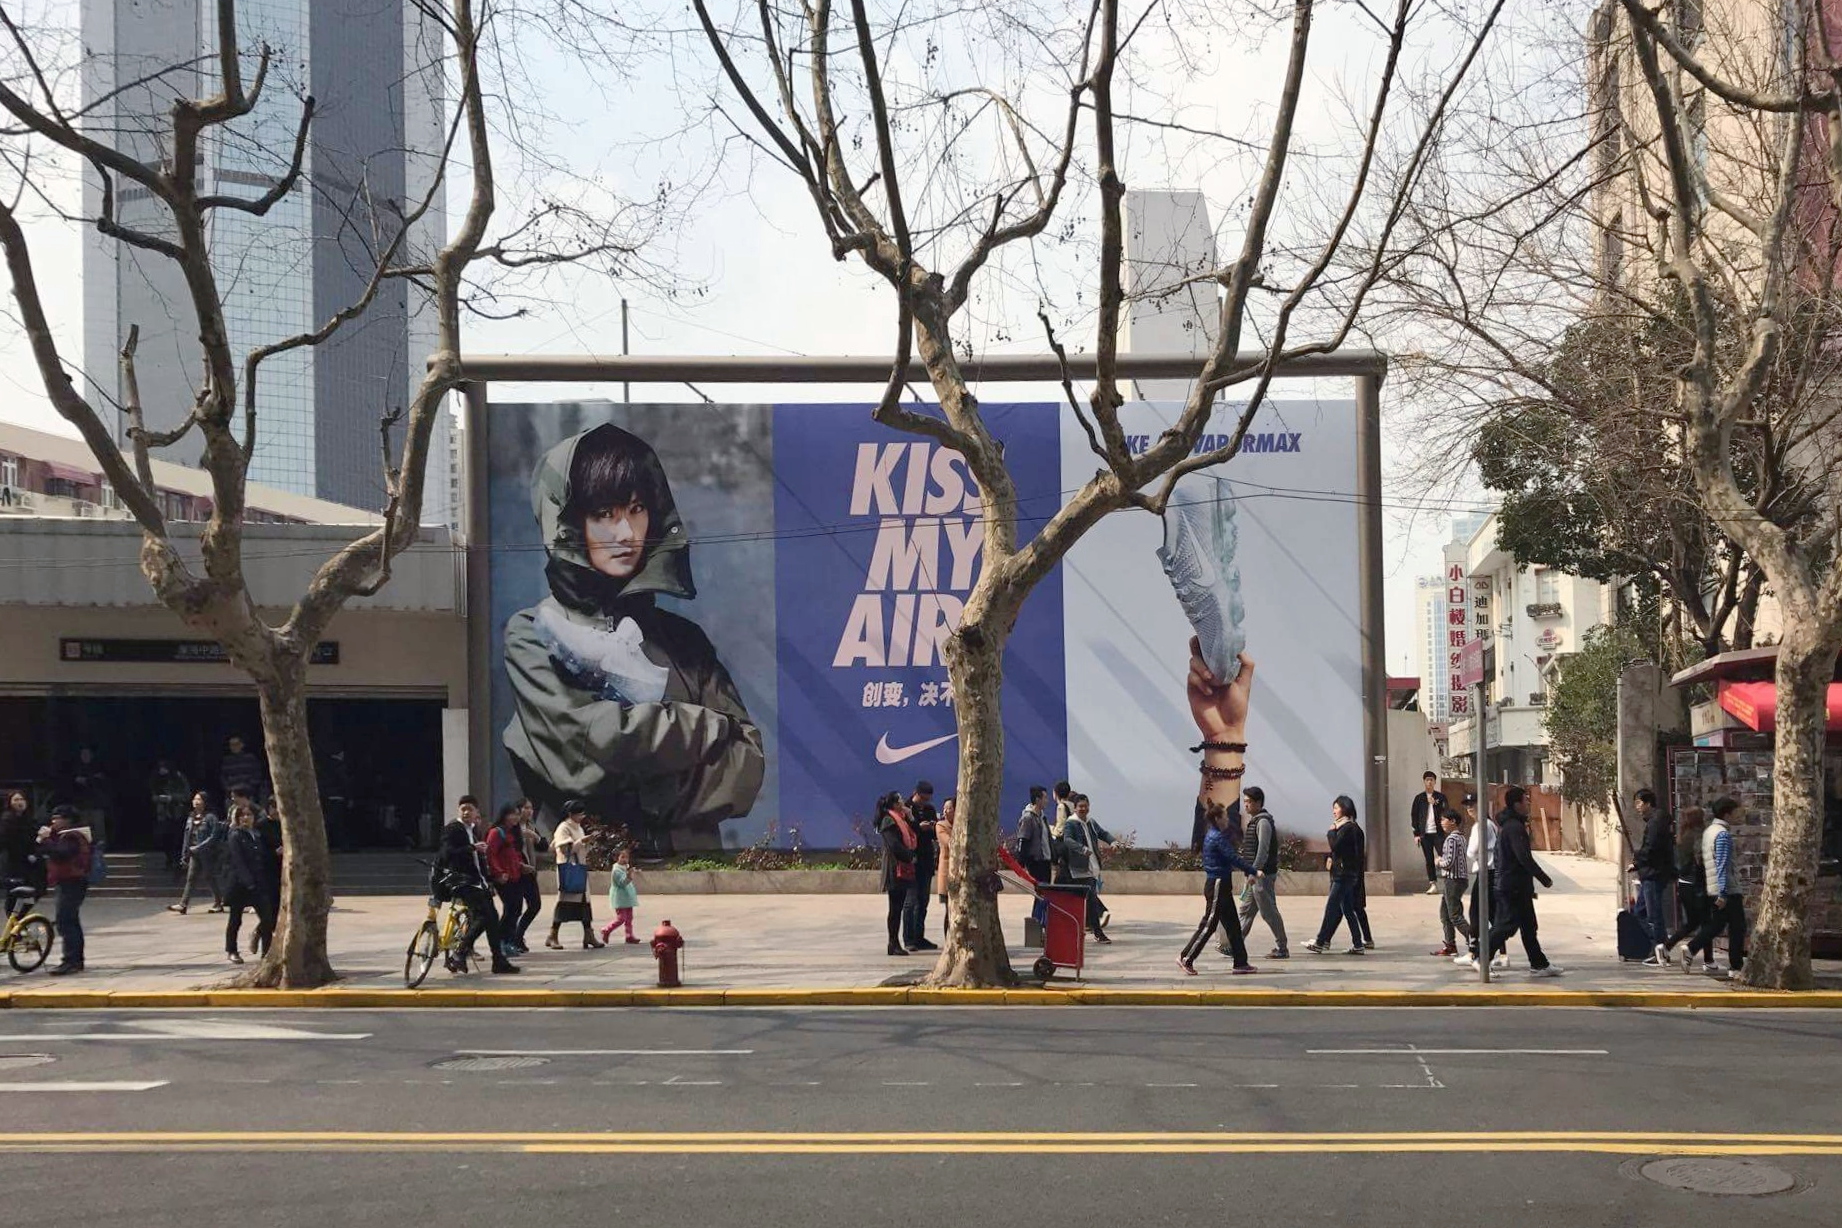  Nike Kiss My Airs Shanghai, China 